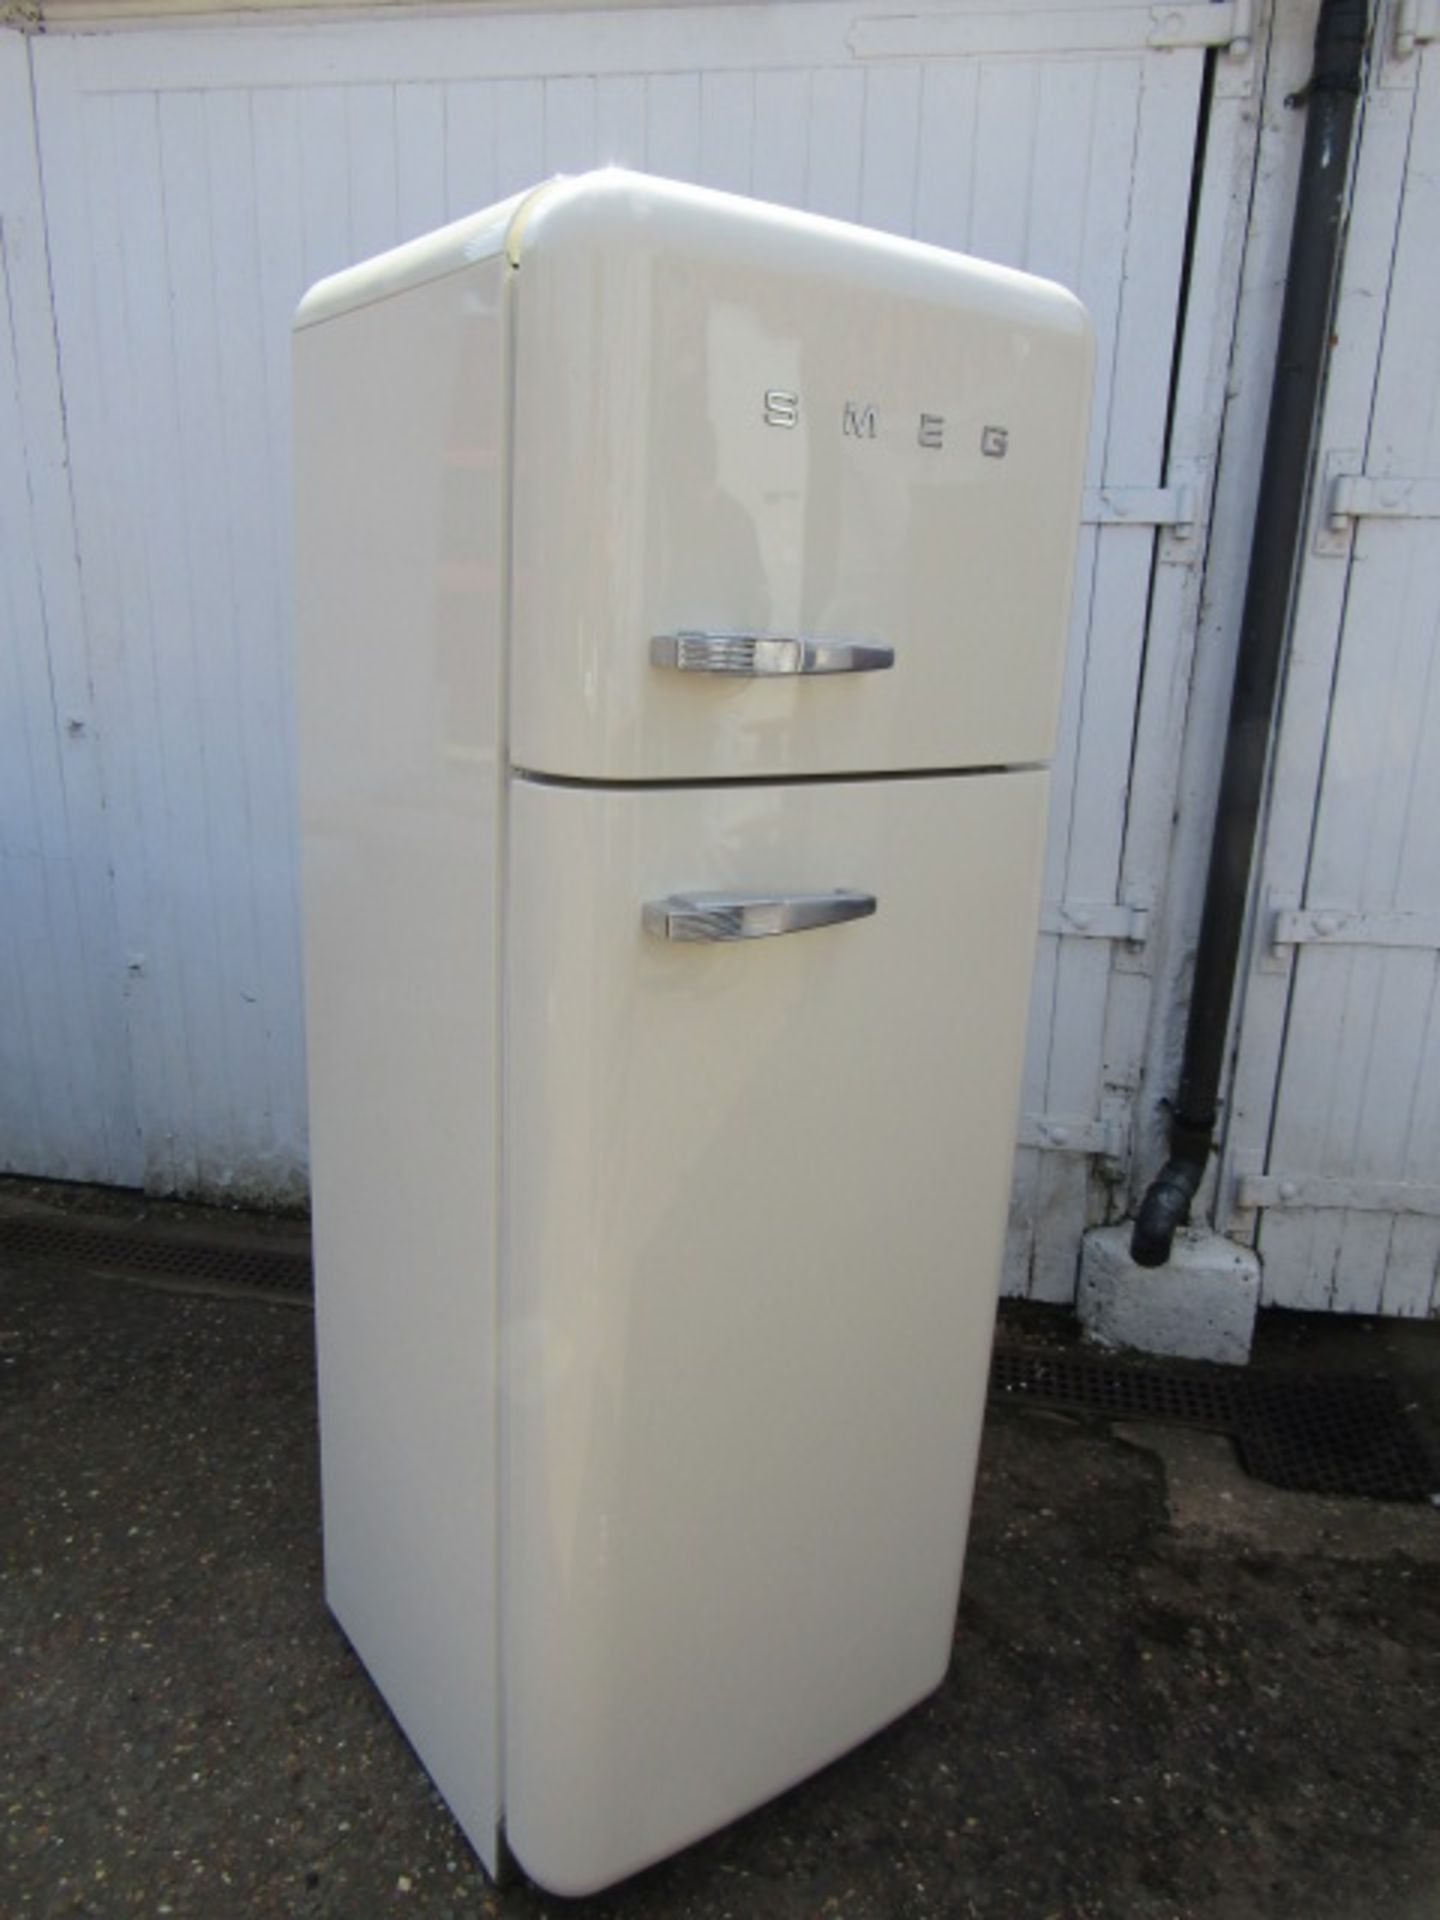 Retro style Smeg fridge freezer